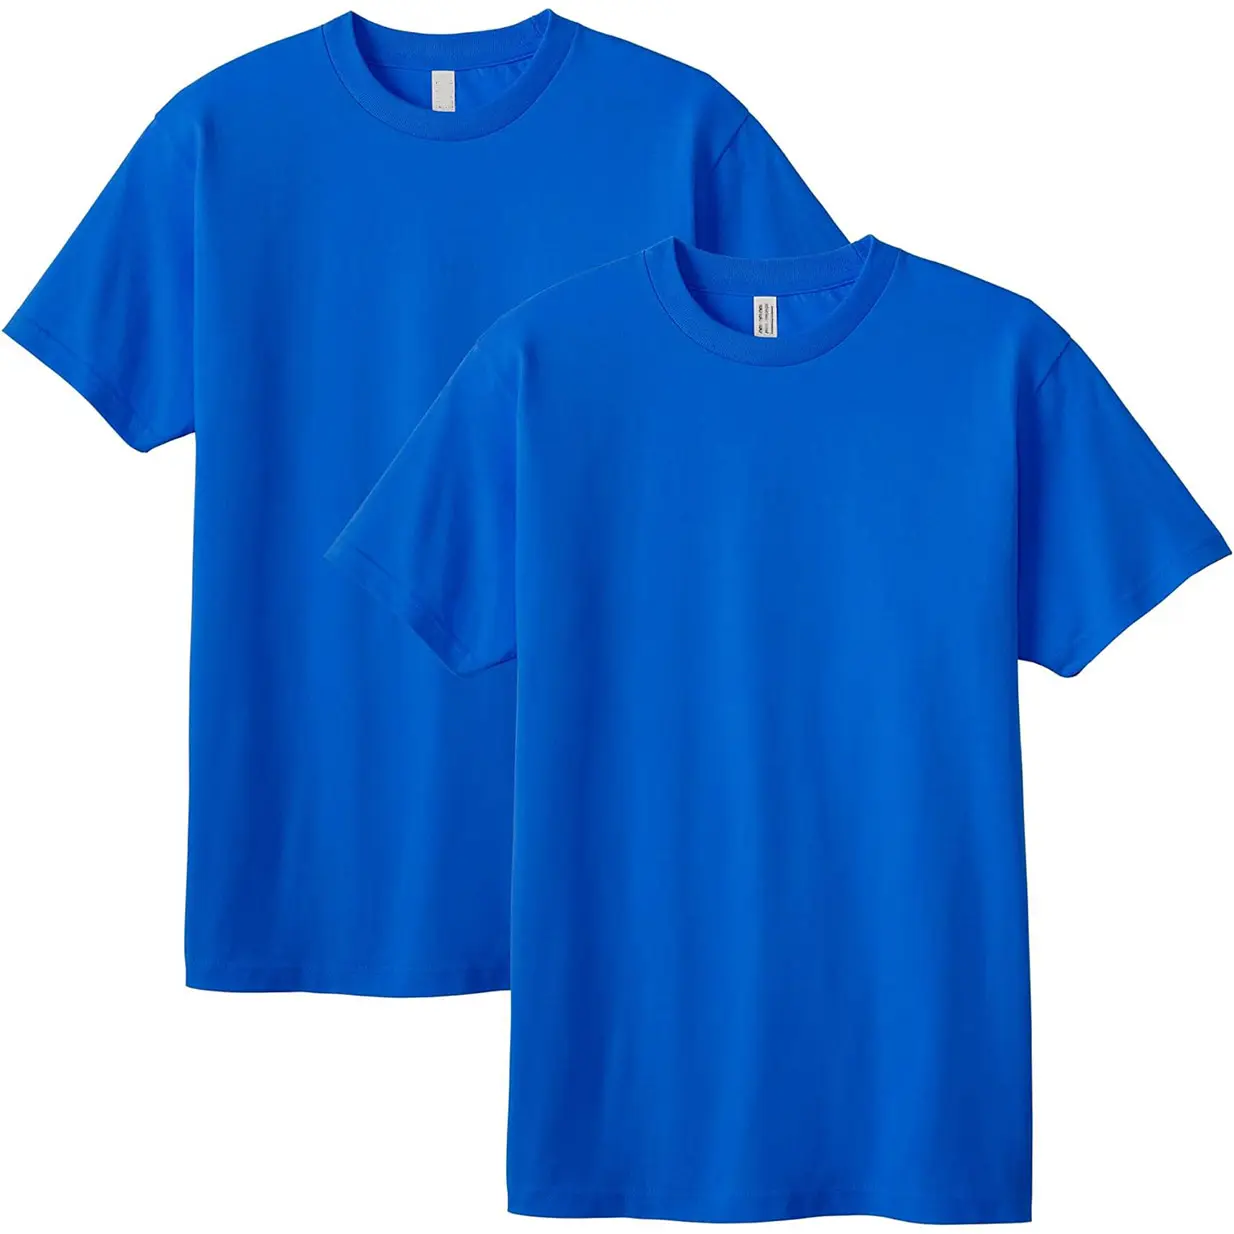 Бесплатный образец пользовательского логотипа печати 100% Хлопковая мужская футболка на заказ пустая Мужская футболка модные рубашки поло от Expanza ind.